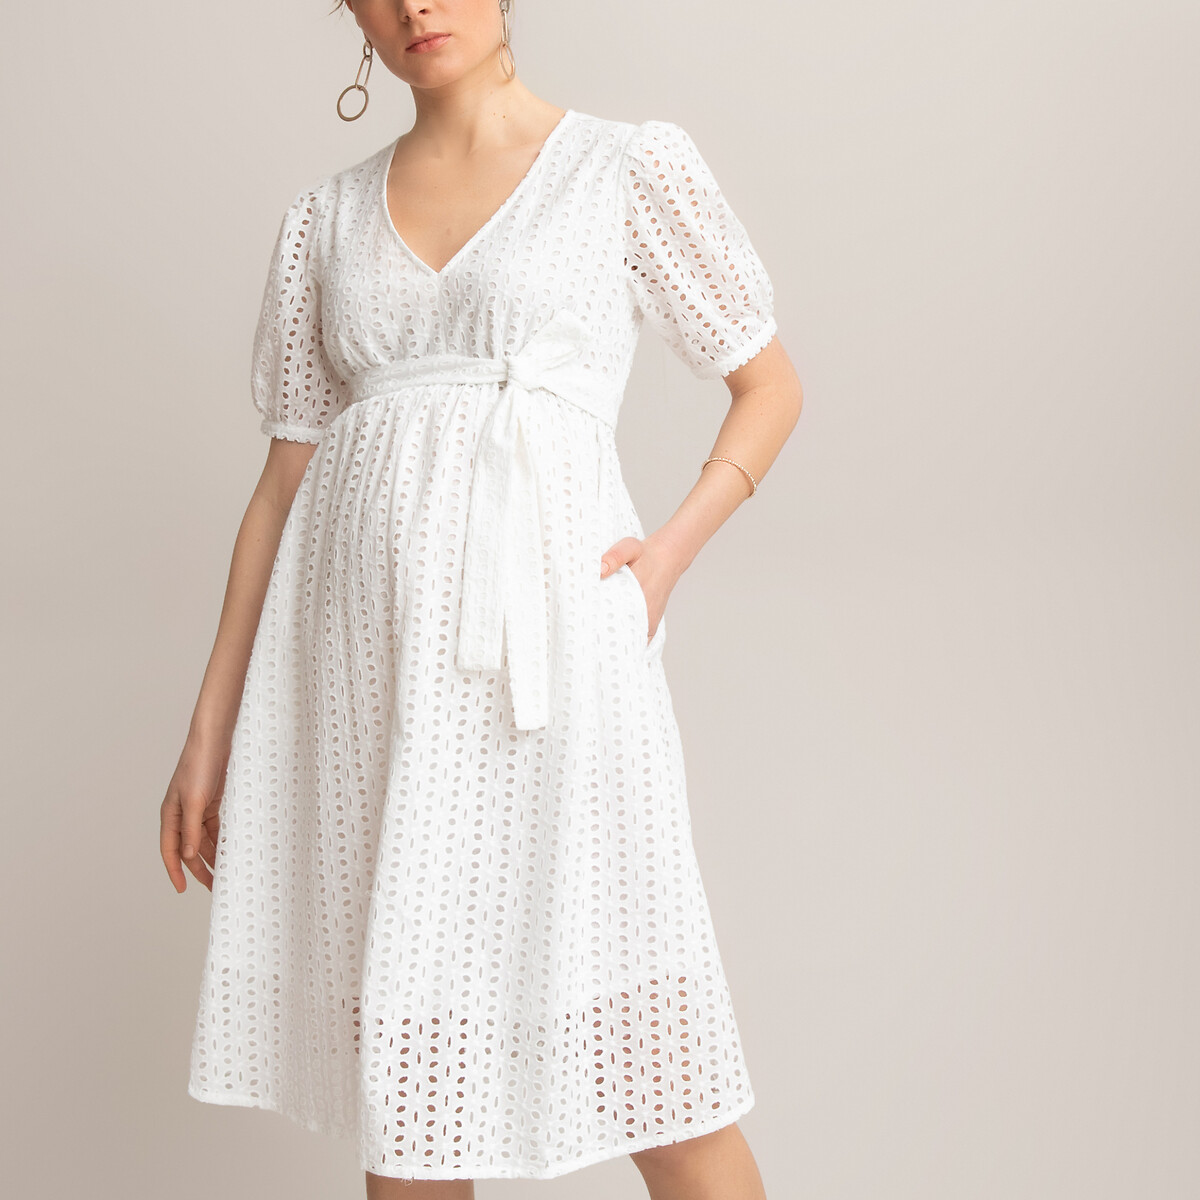 Платье LaRedoute Для периода беременности с ремешком из английской вышивки 46 (FR) - 52 (RUS) белый, размер 46 (FR) - 52 (RUS) Для периода беременности с ремешком из английской вышивки 46 (FR) - 52 (RUS) белый - фото 2